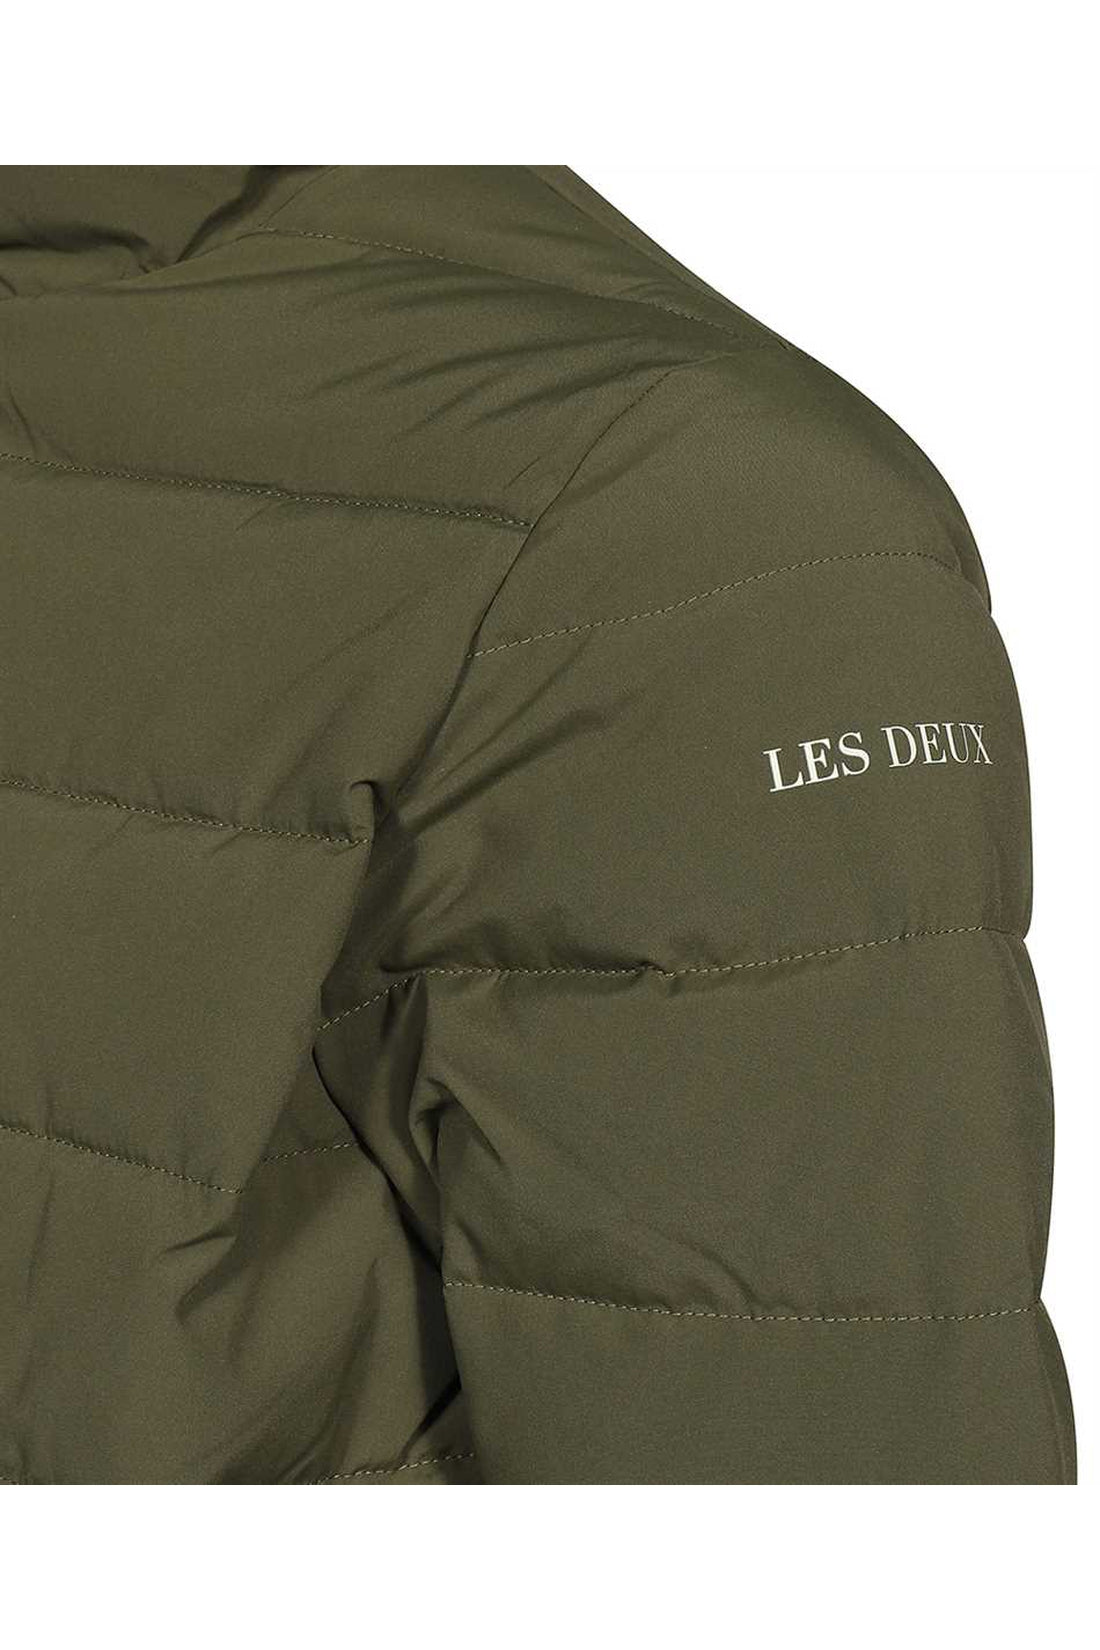 Les Deux-OUTLET-SALE-Techno-nylon down jacket-ARCHIVIST